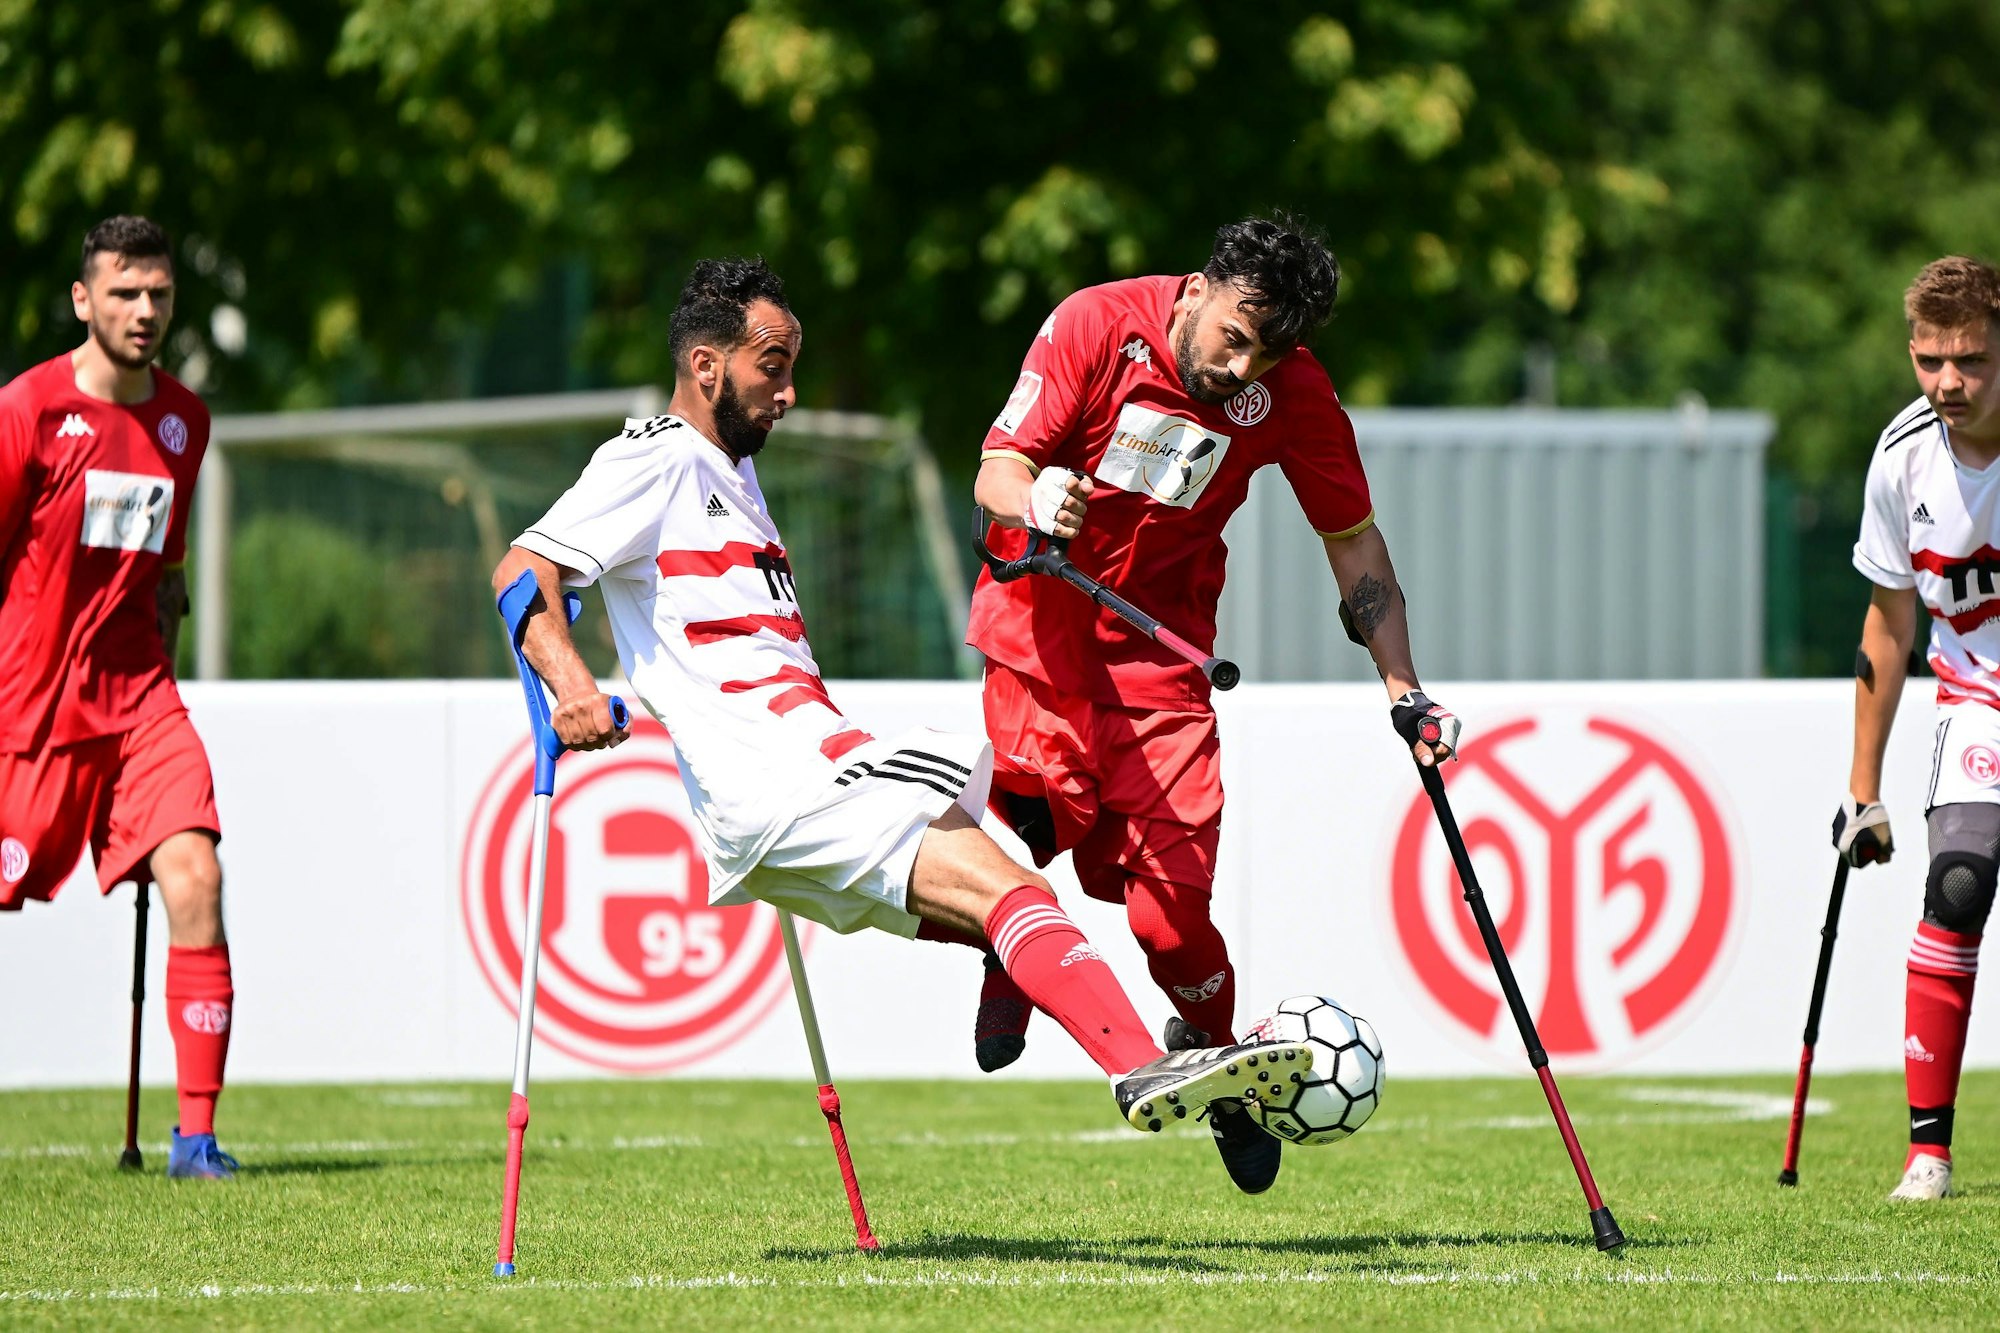 Radouane Chaanoune spielt den Ball. Auch auf dem Bild zu sehen: Sein Teamkollege Emrah Akdemir (r.), sowie zwei Spieler von Mainz 05.